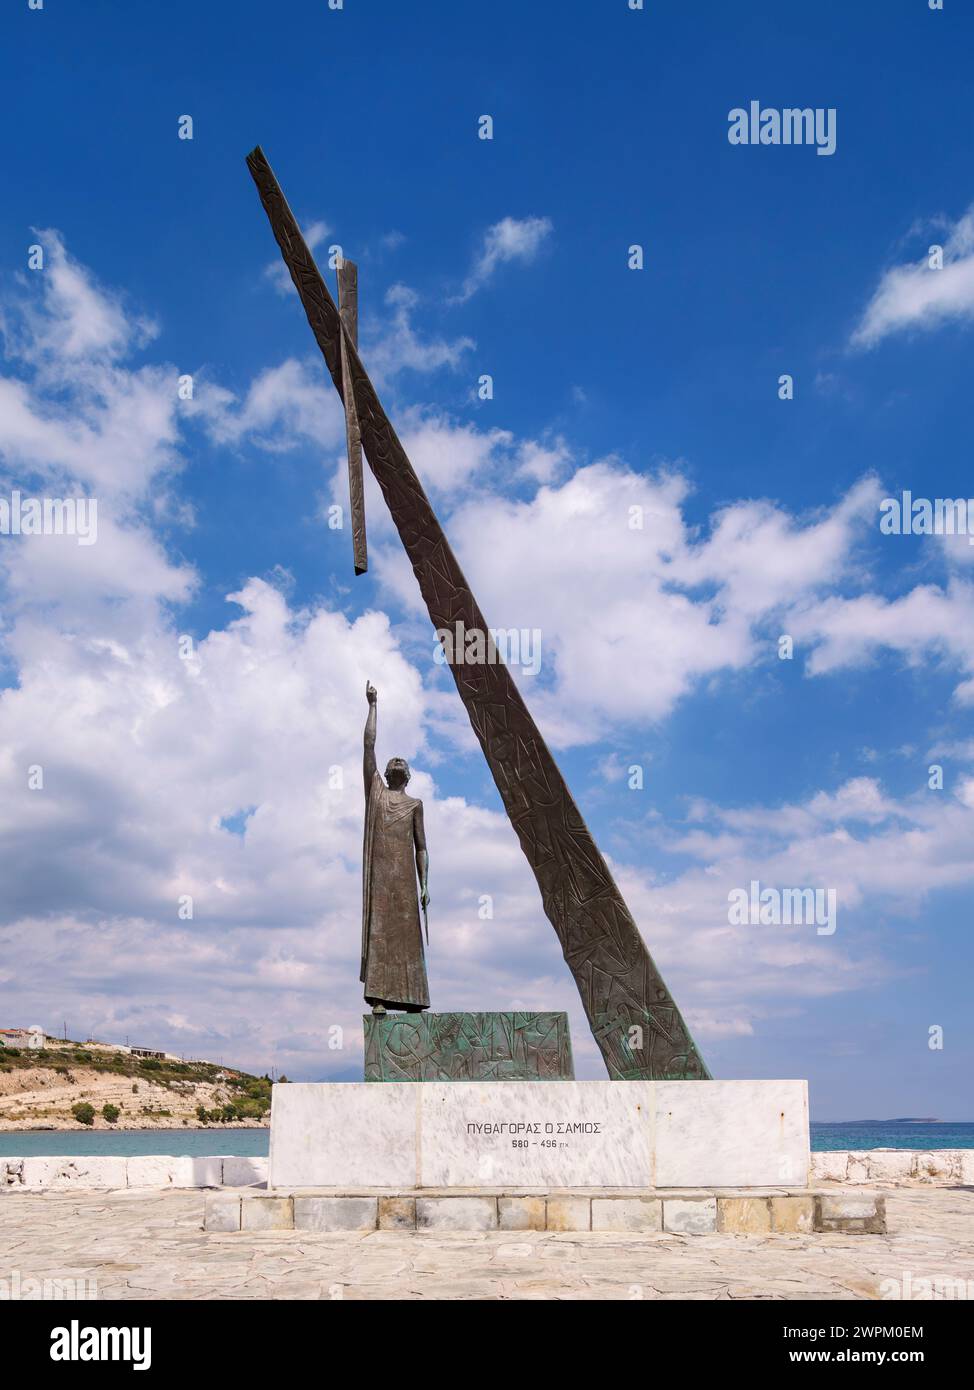 Statua di Pitagora, porto di Pitagoro, isola di Samo, Egeo settentrionale, isole greche, Grecia, Europa Foto Stock